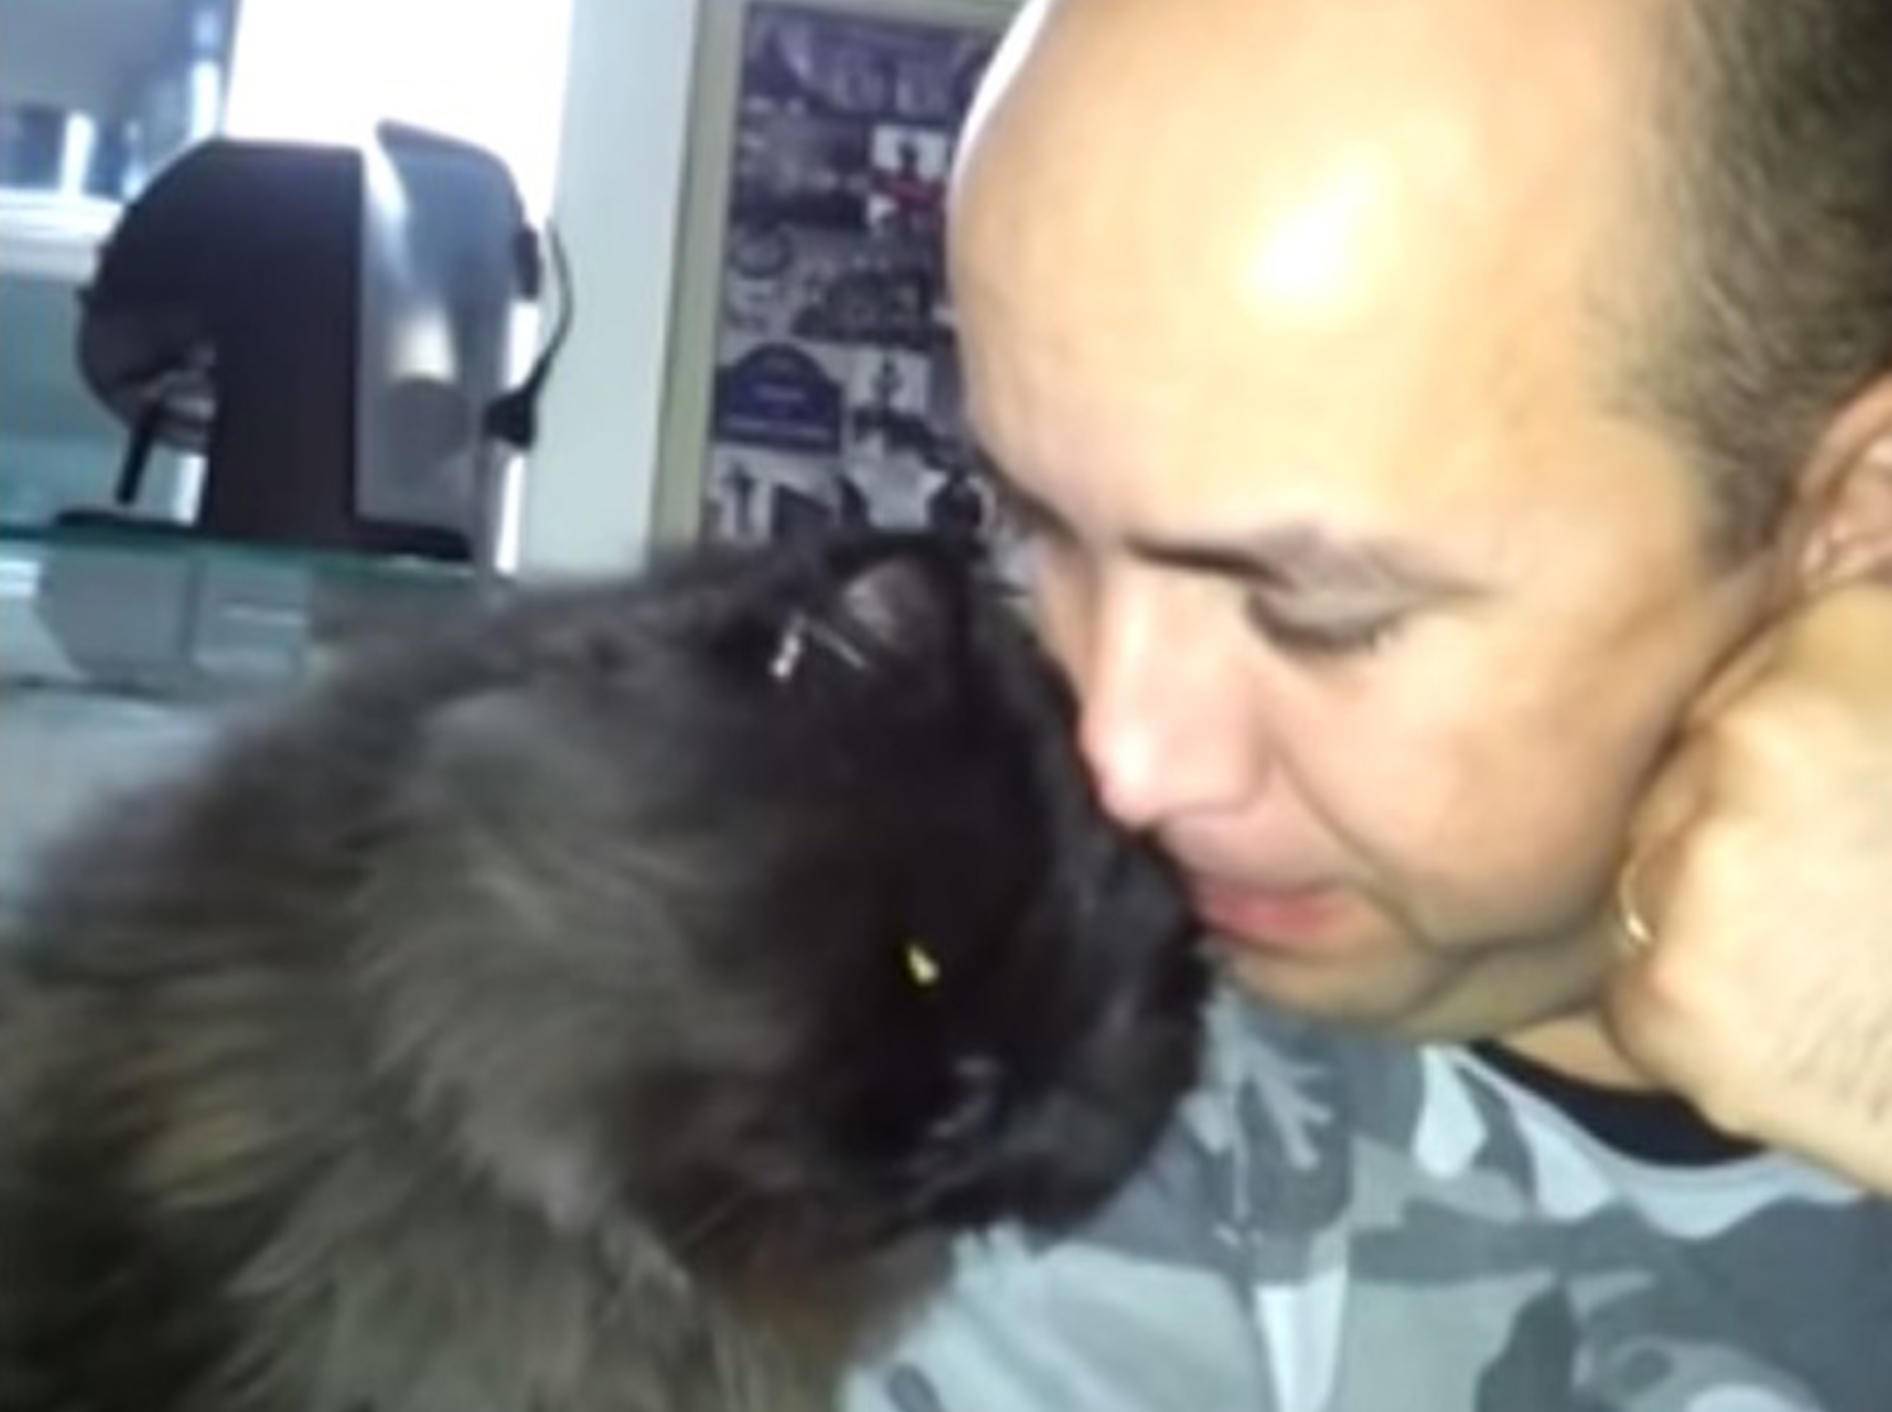 Flauschige Katze: "Ey, streichel mich!" – Bild: Youtube / RM Videos